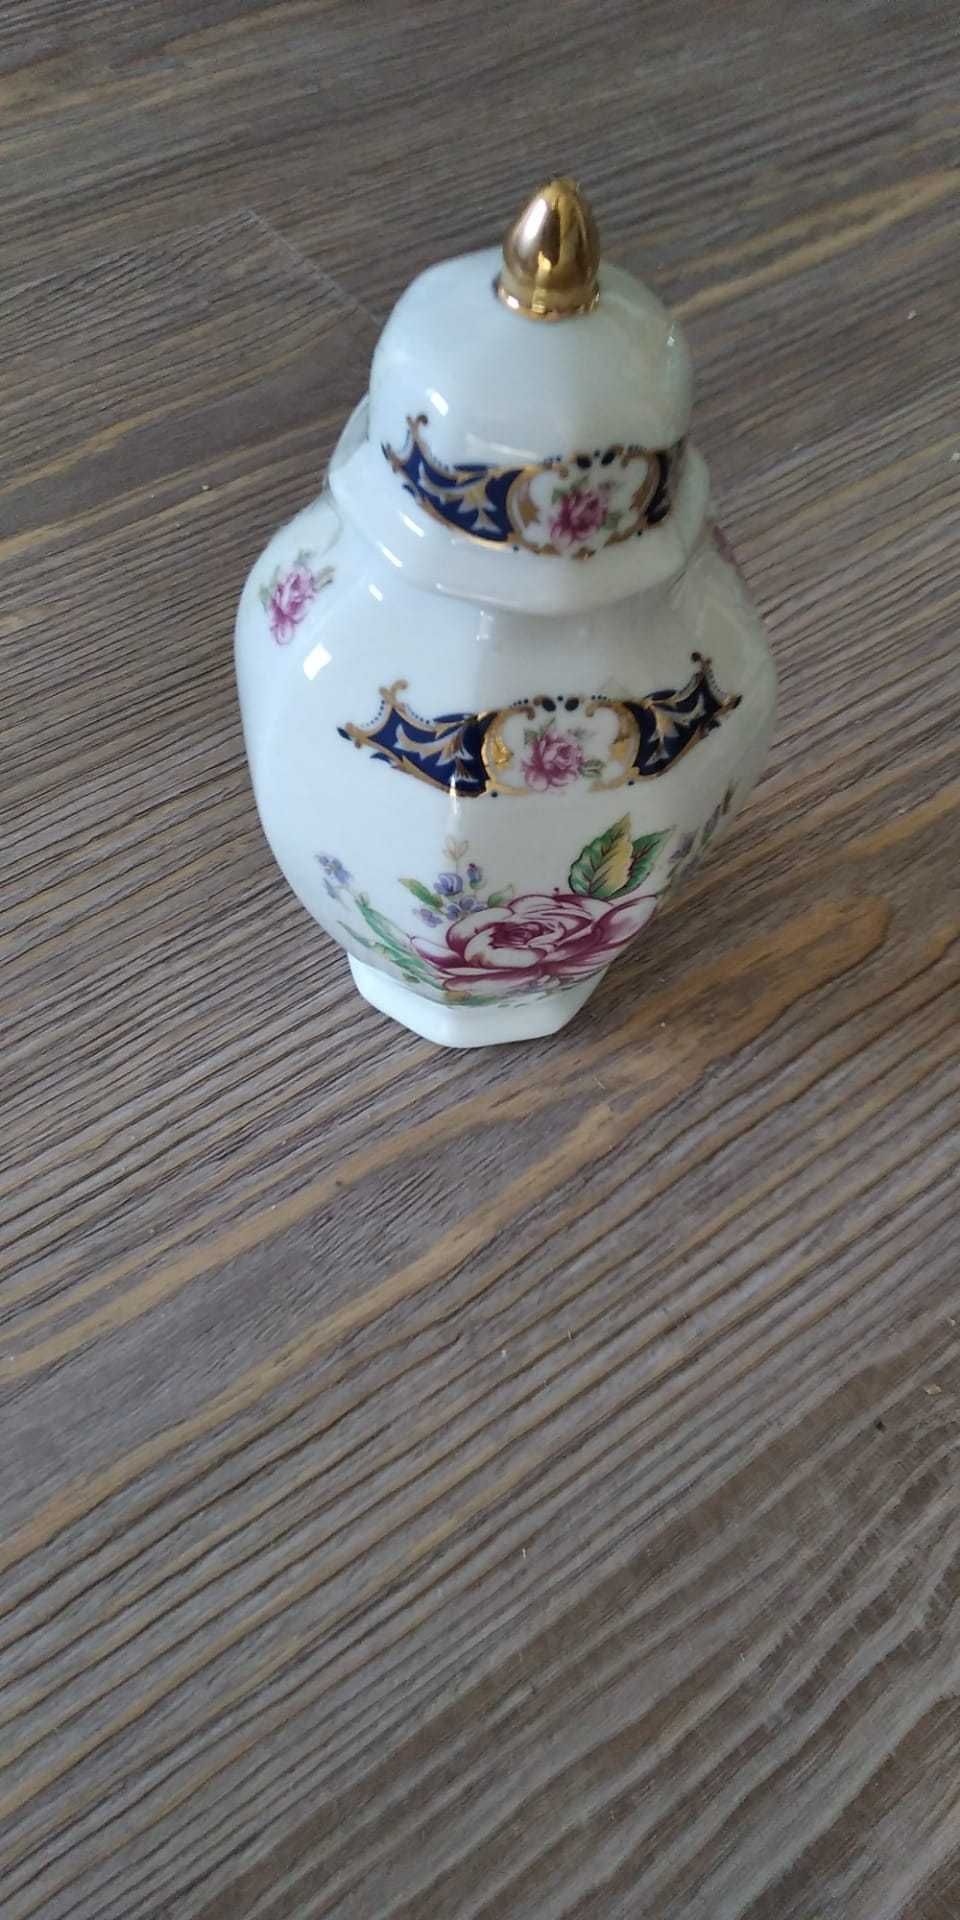 Bule de chá Limoges, pintado à mão